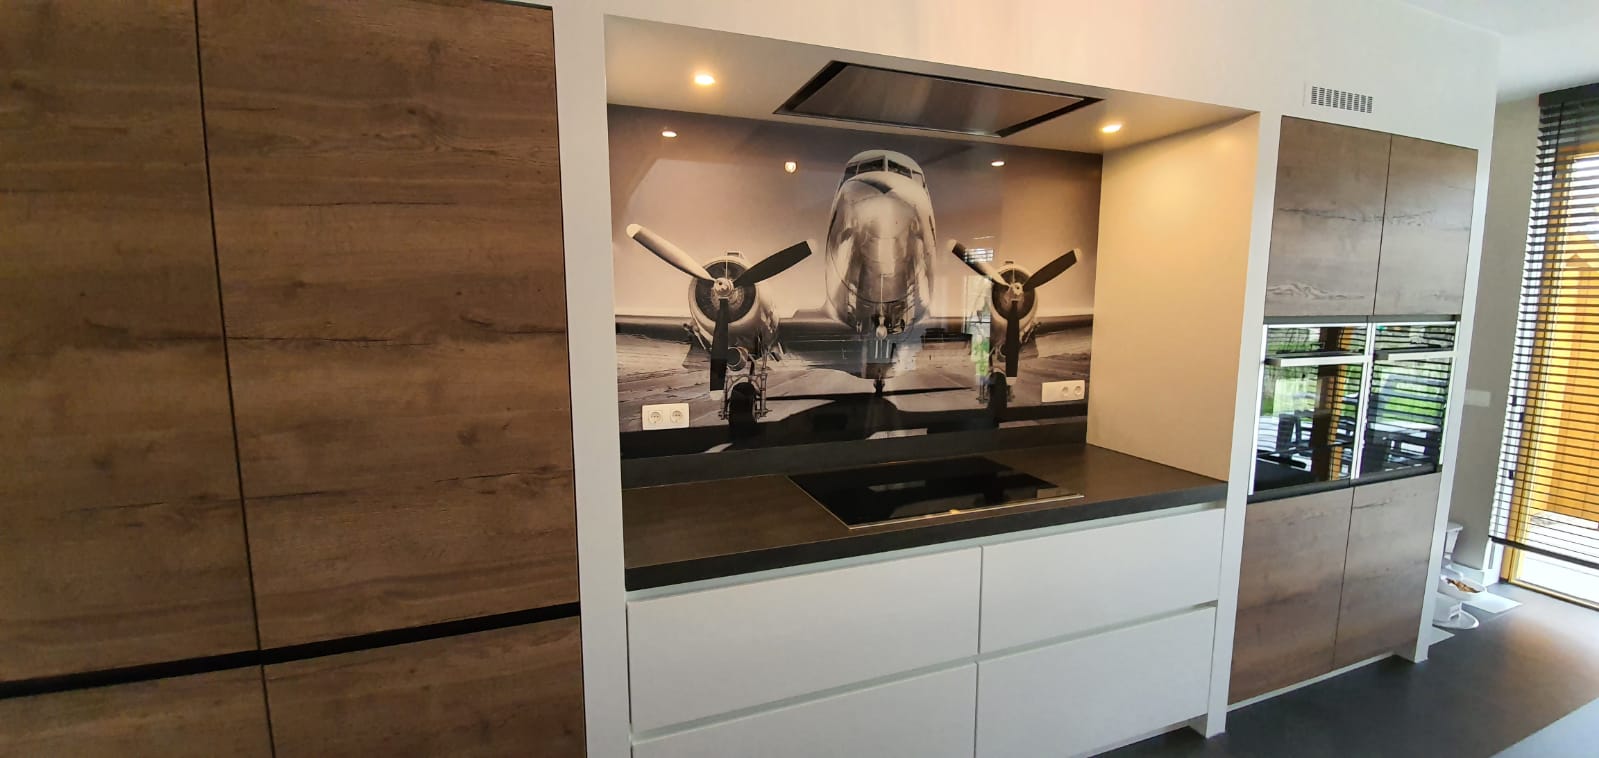 glazen achterwand keuken met print van vliegtuig